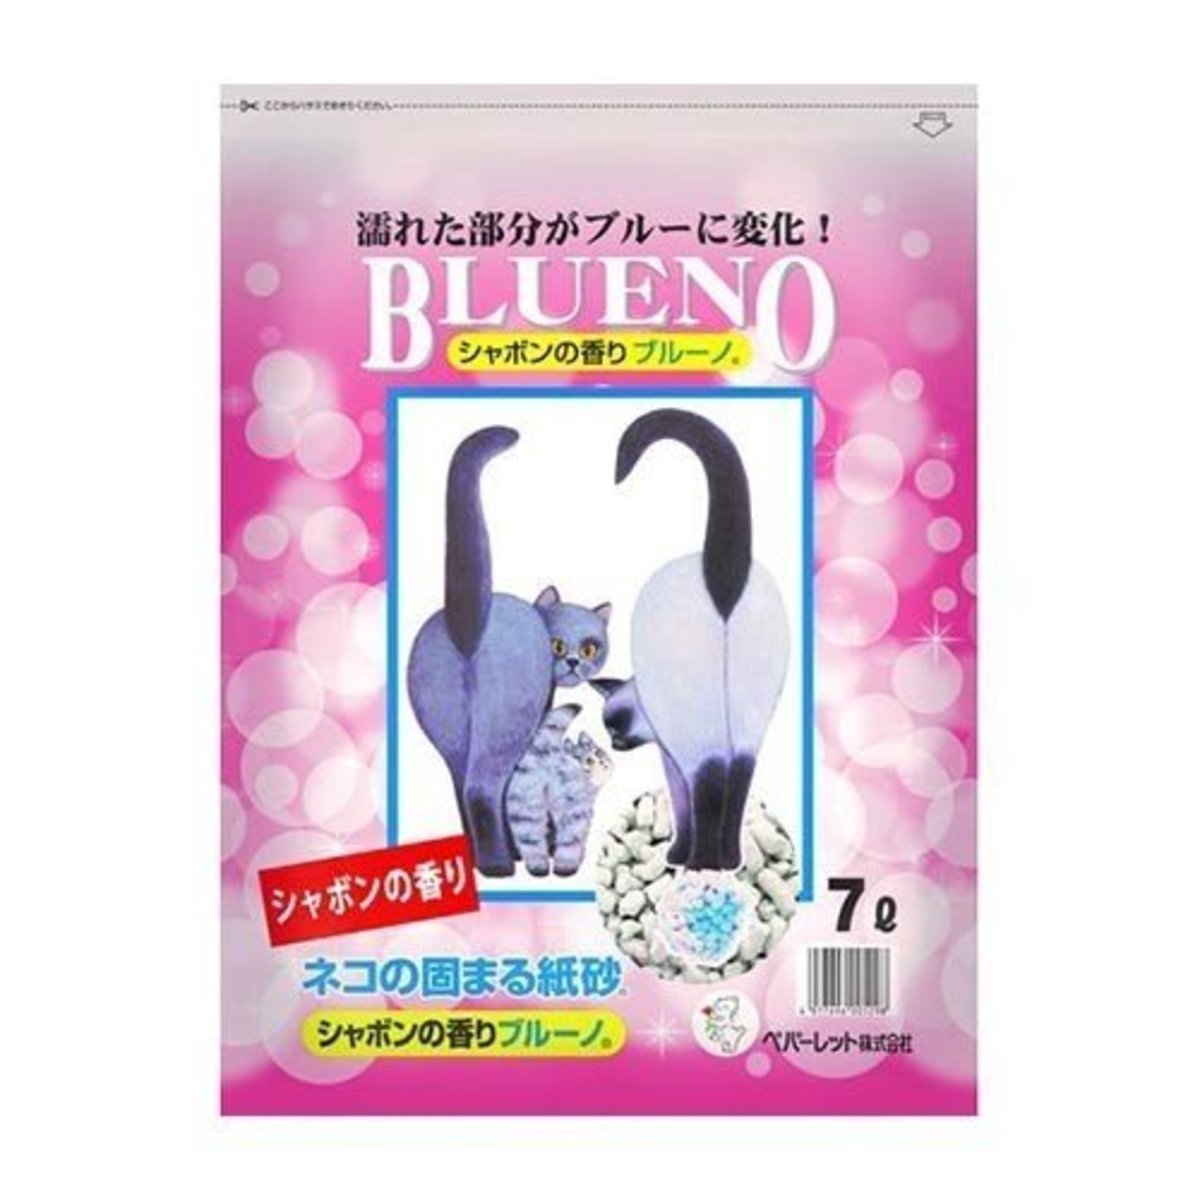 【紙貓砂】日本BLUENO變藍再生紙砂 香皂味 7L 6005298